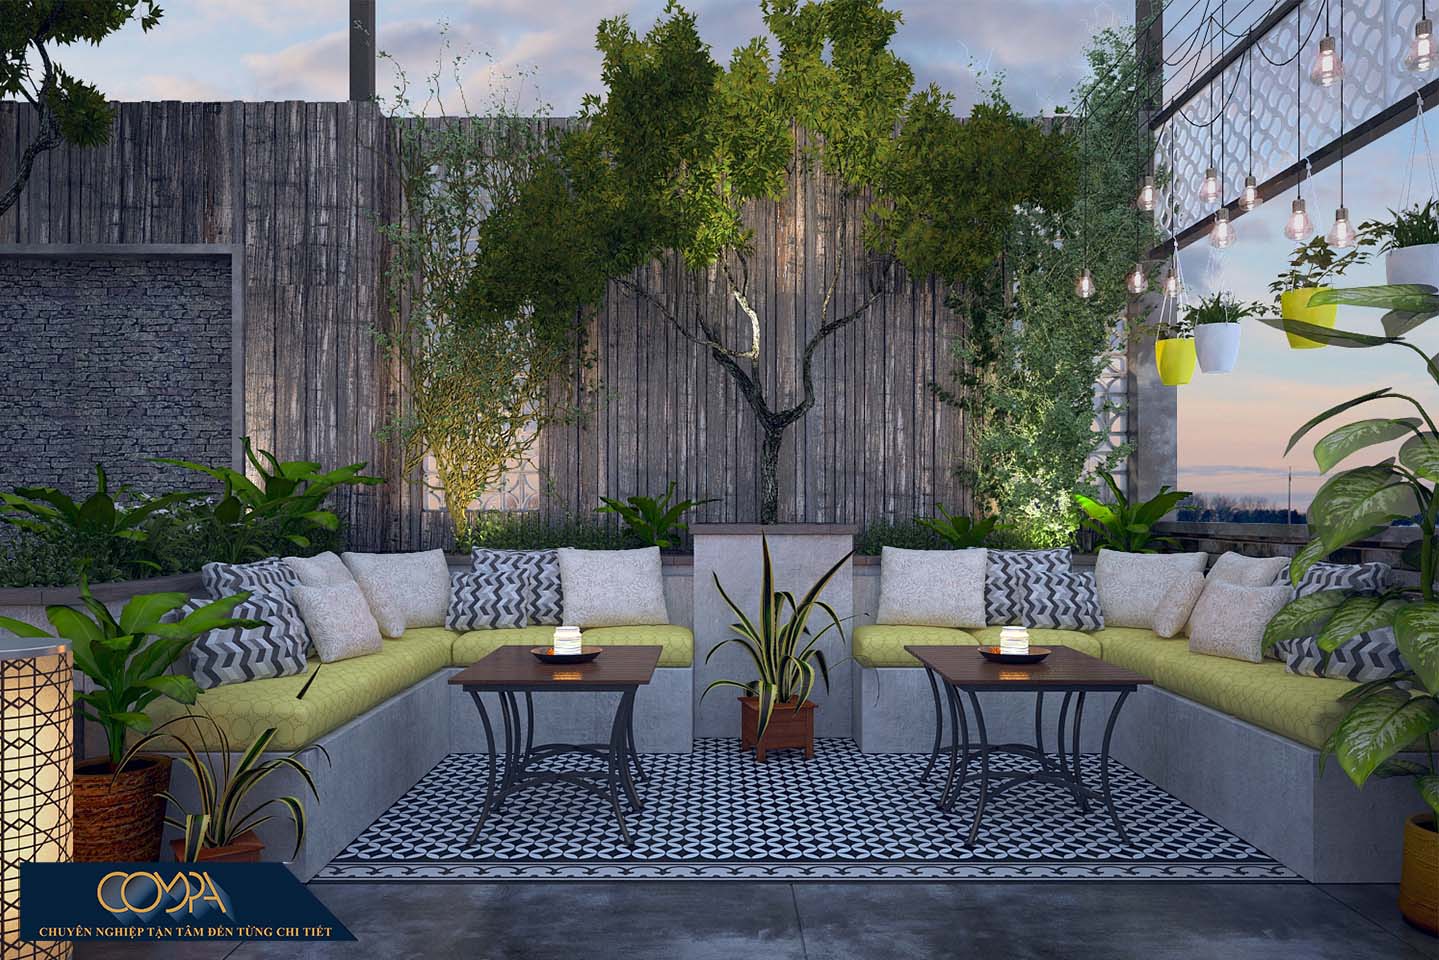 Hình thiết kế nội thất sân vườn đẹp theo phong cách studio với vòm cây xanh